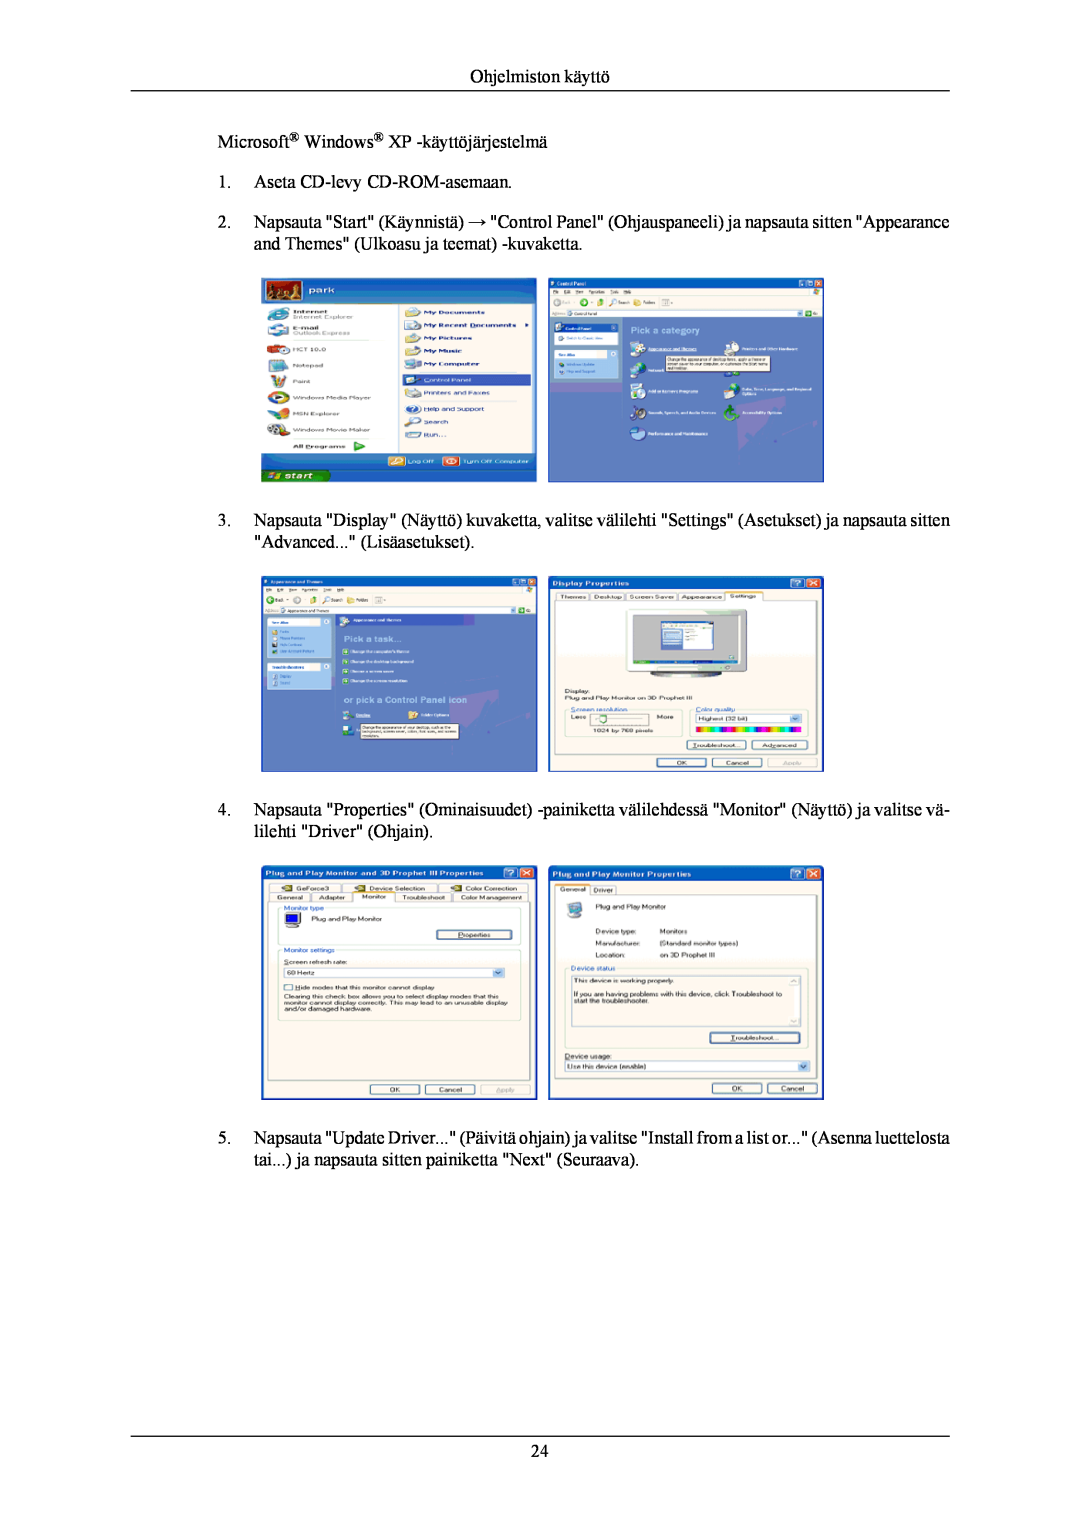 Samsung LS24KIEEFV/EDC manual Ohjelmiston käyttö Microsoft Windows XP -käyttöjärjestelmä, Aseta CD-levy CD-ROM-asemaan 